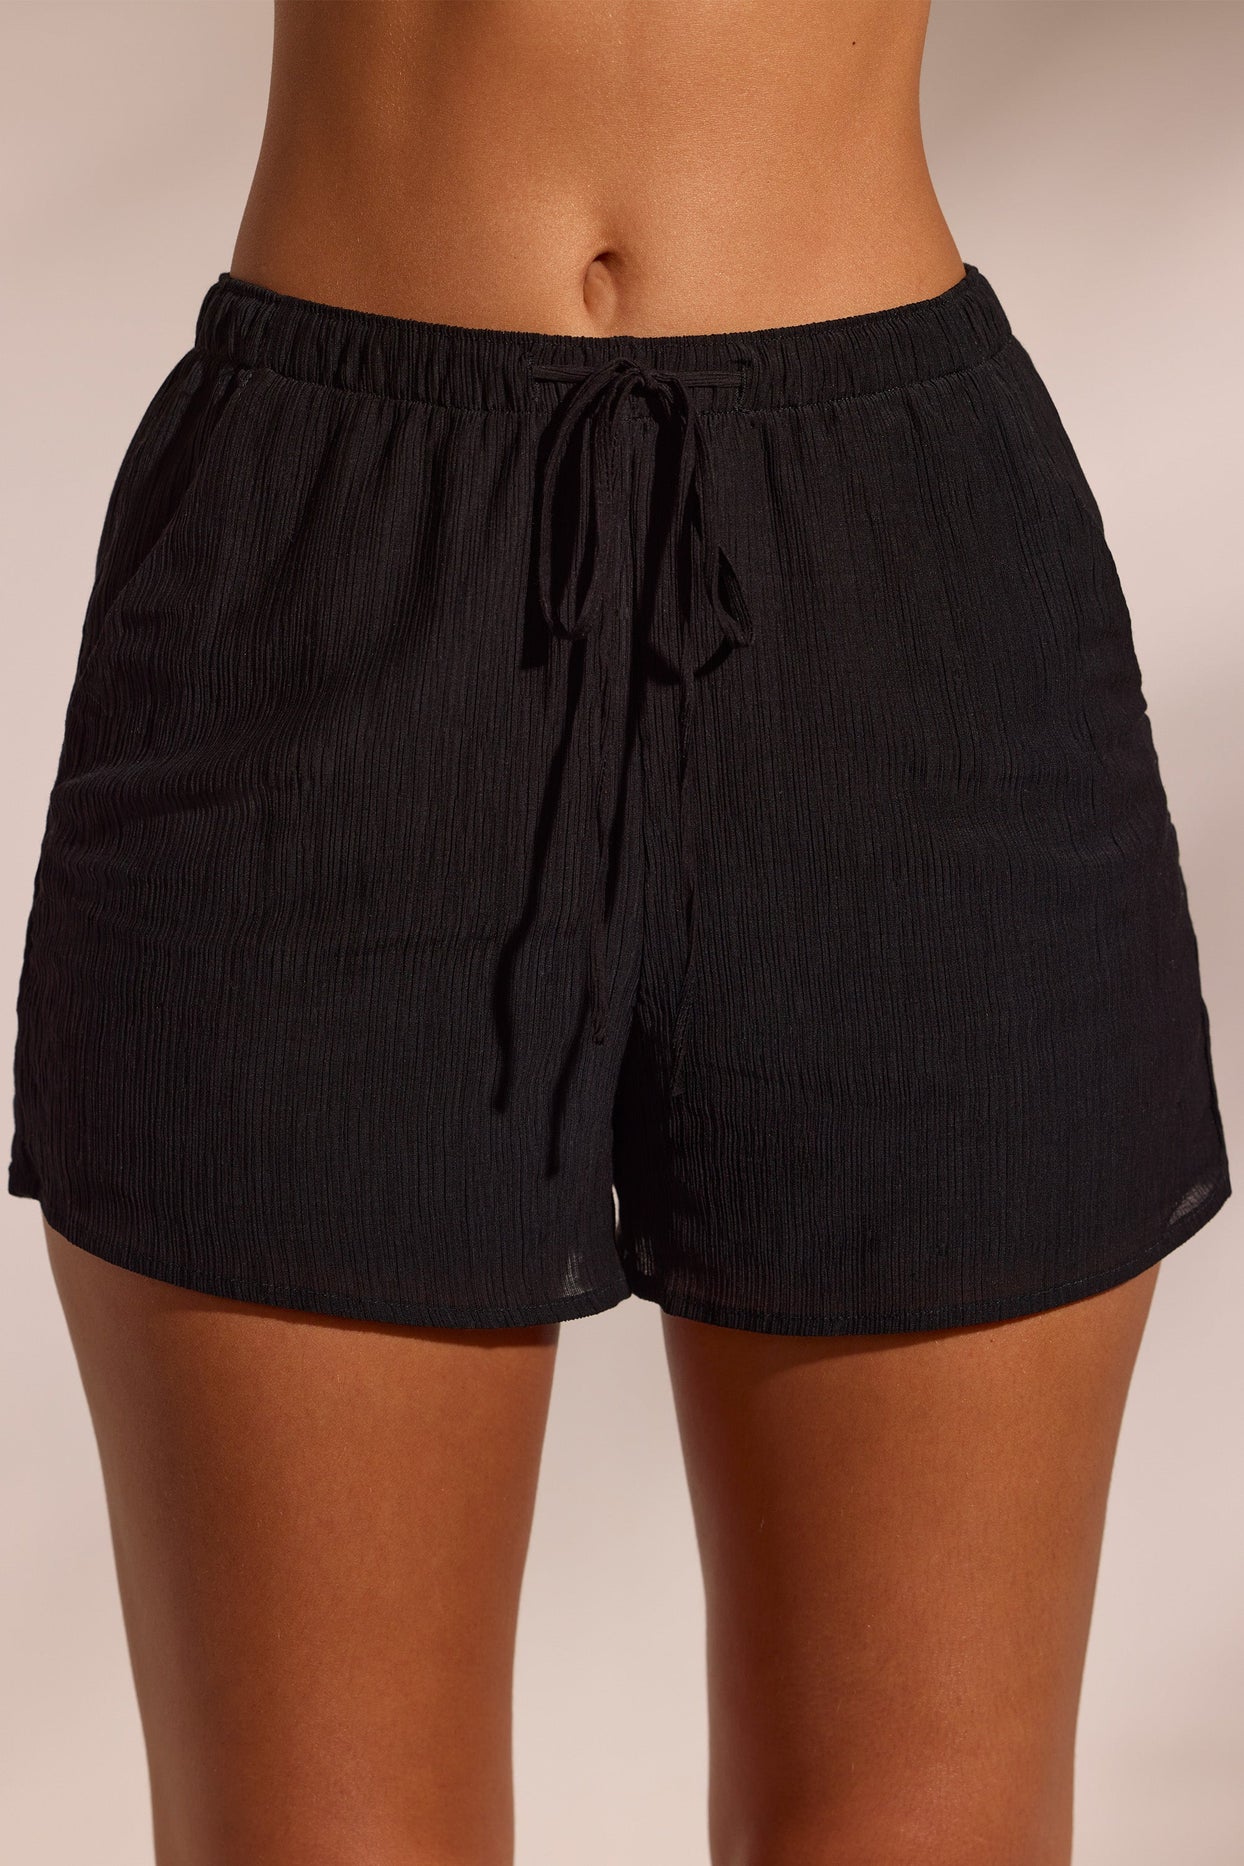 Shorts de praia com textura enrugada em preto